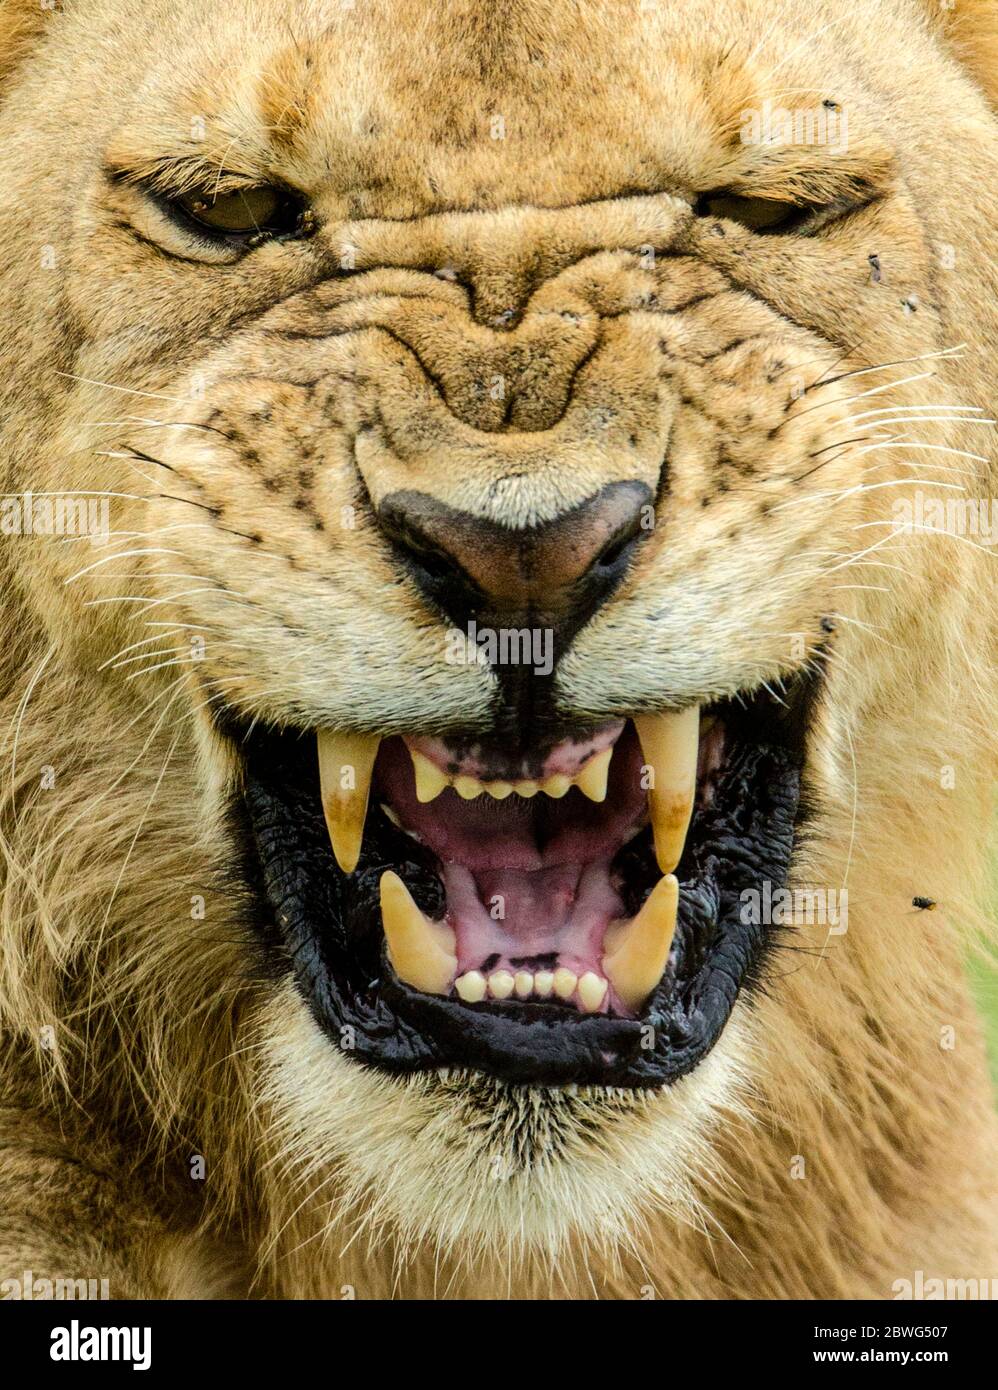 Lion (Panthera leo) Roaring, Parc national du Serengeti, Tanzanie, Afrique Banque D'Images